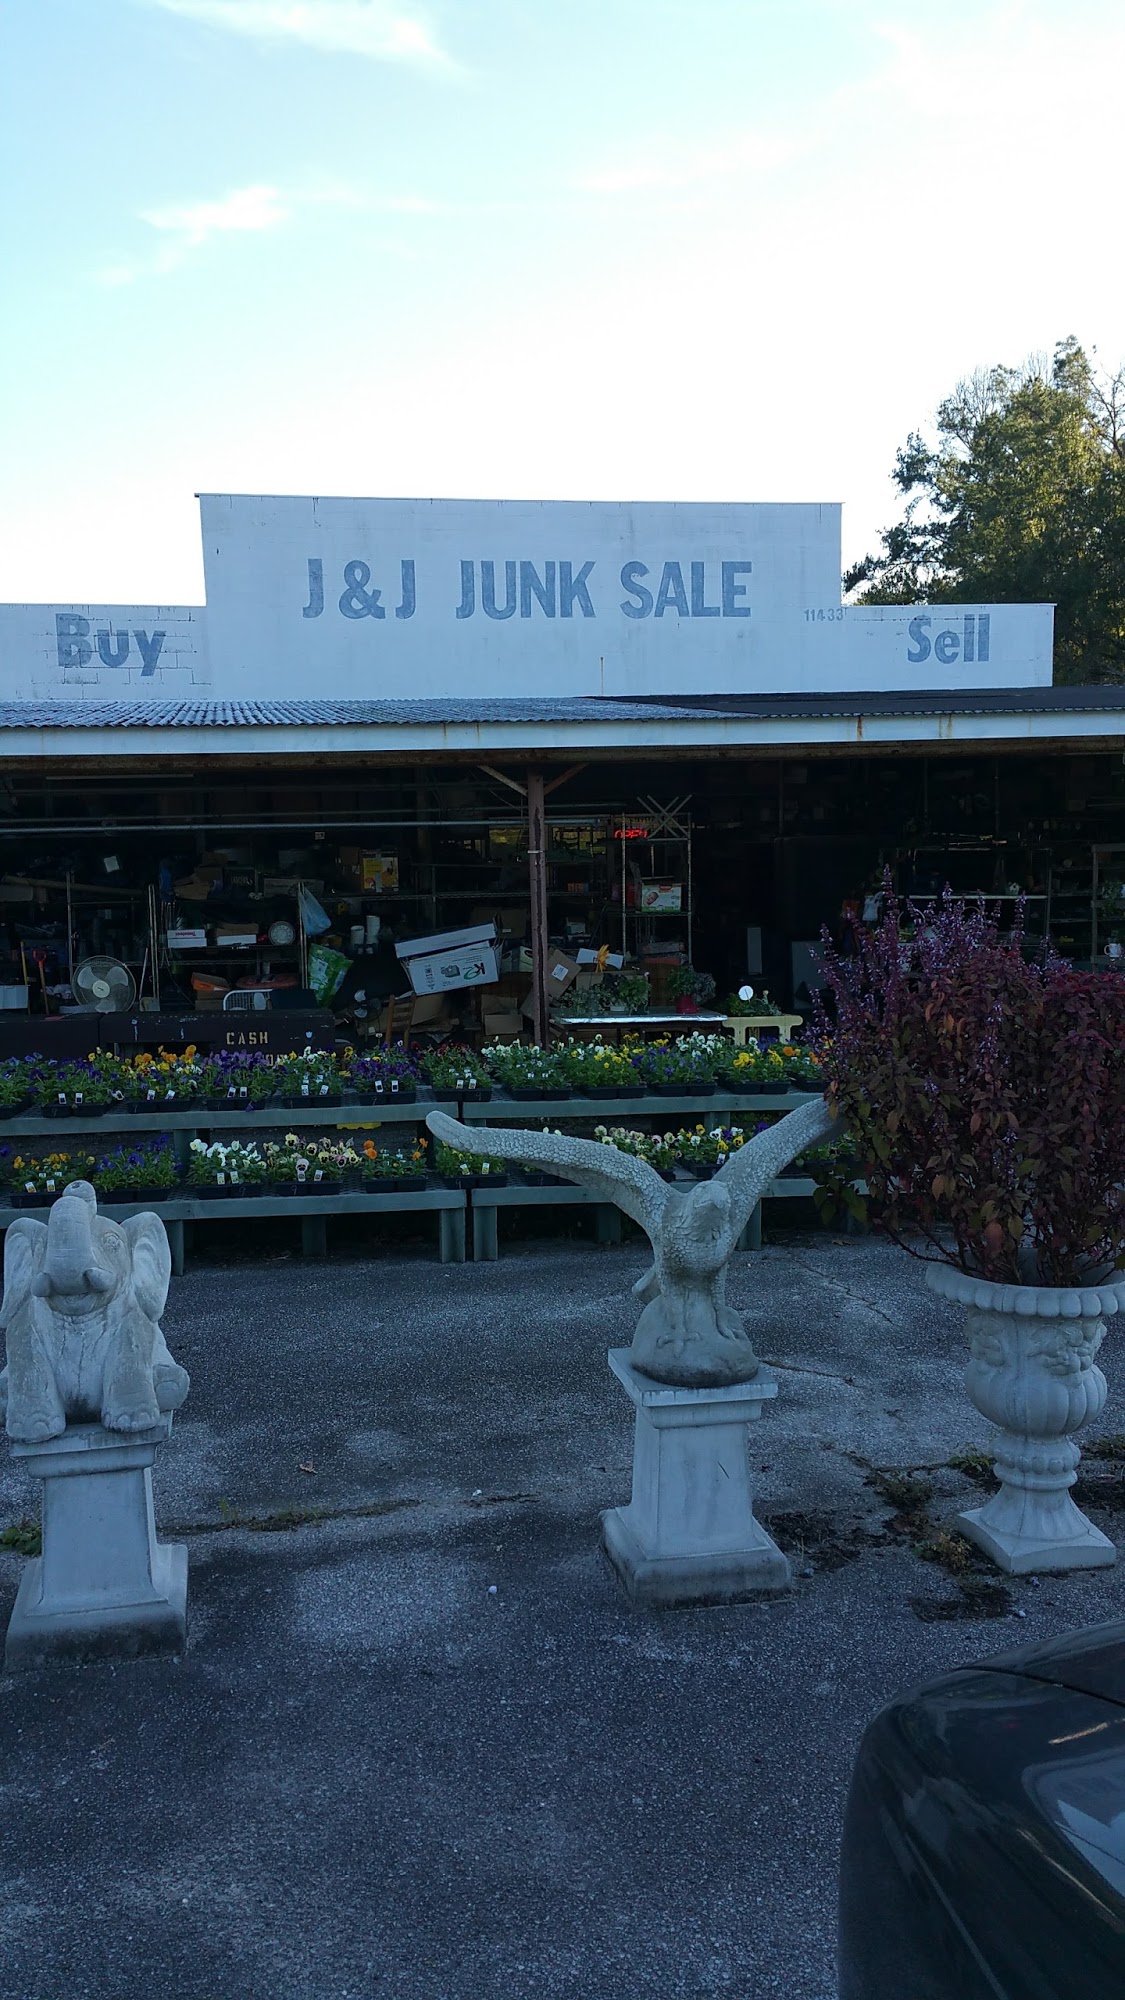 J & J Junk Sale